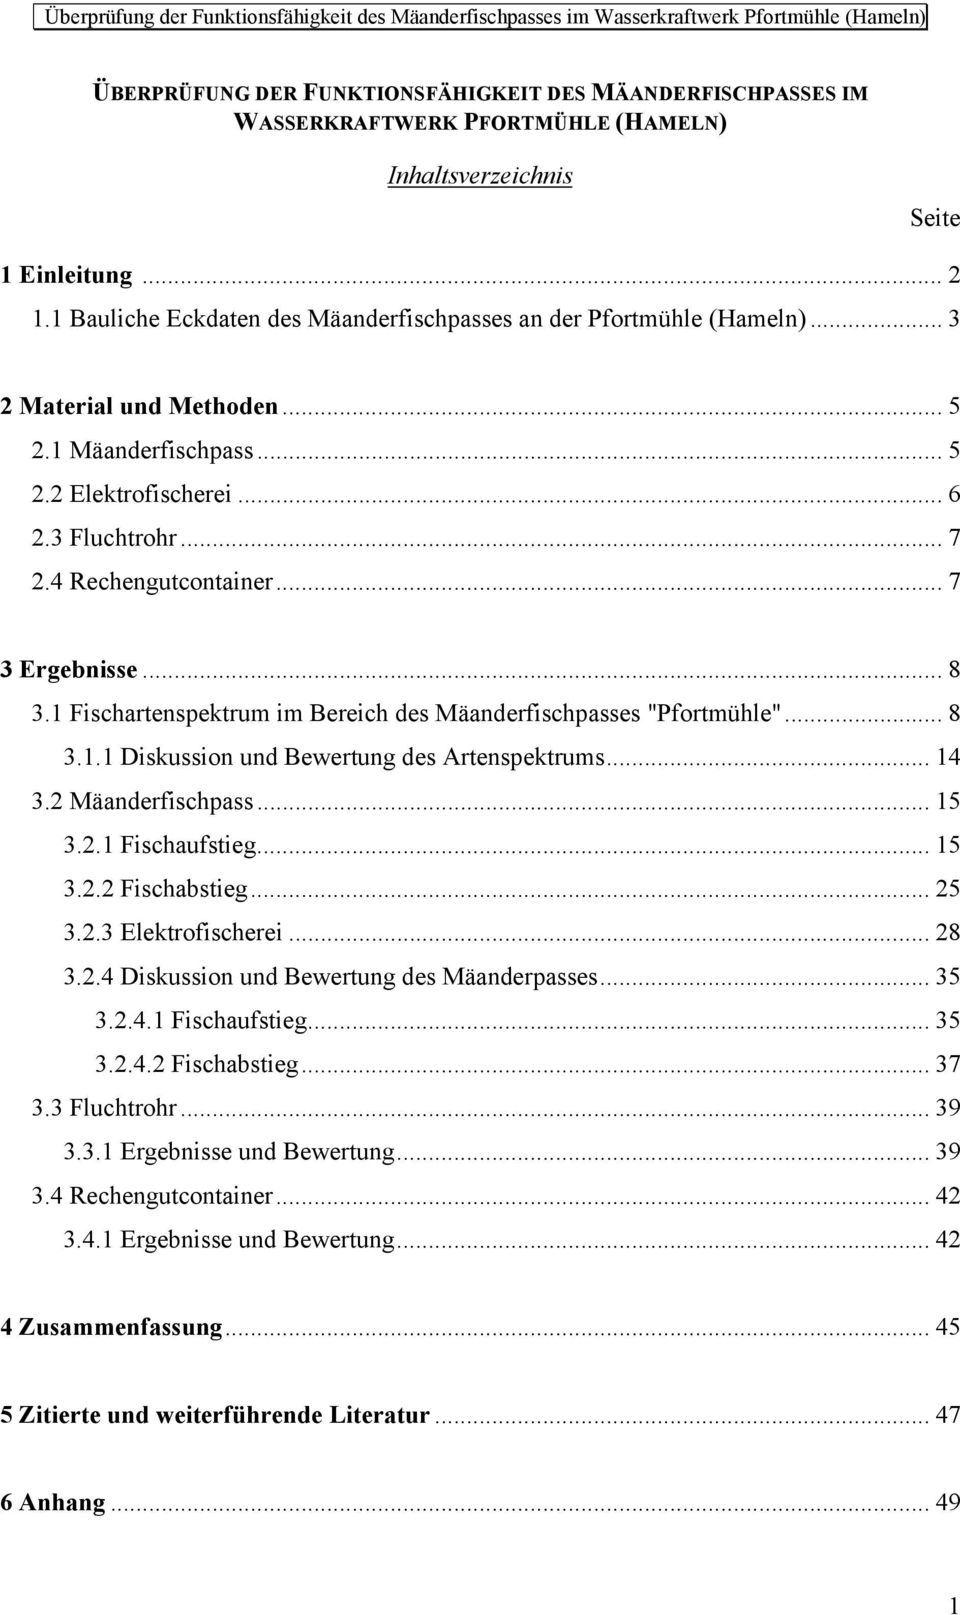 .. 7 3 Ergebnisse... 8 3.1 Fischartenspektrum im Bereich des Mäanderfischpasses "Pfortmühle"... 8 3.1.1 Diskussion und Bewertung des Artenspektrums... 14 3.2 Mäanderfischpass... 15 3.2.1 Fischaufstieg.